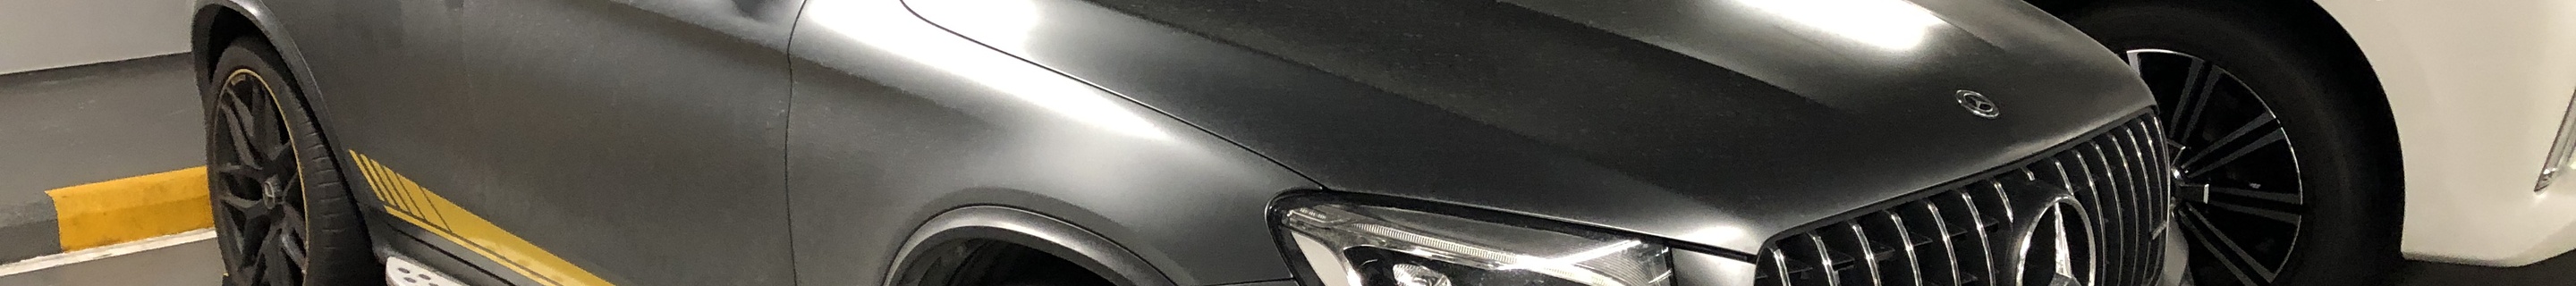 Mercedes-AMG GLC 63 S X253 2018 Edition 1